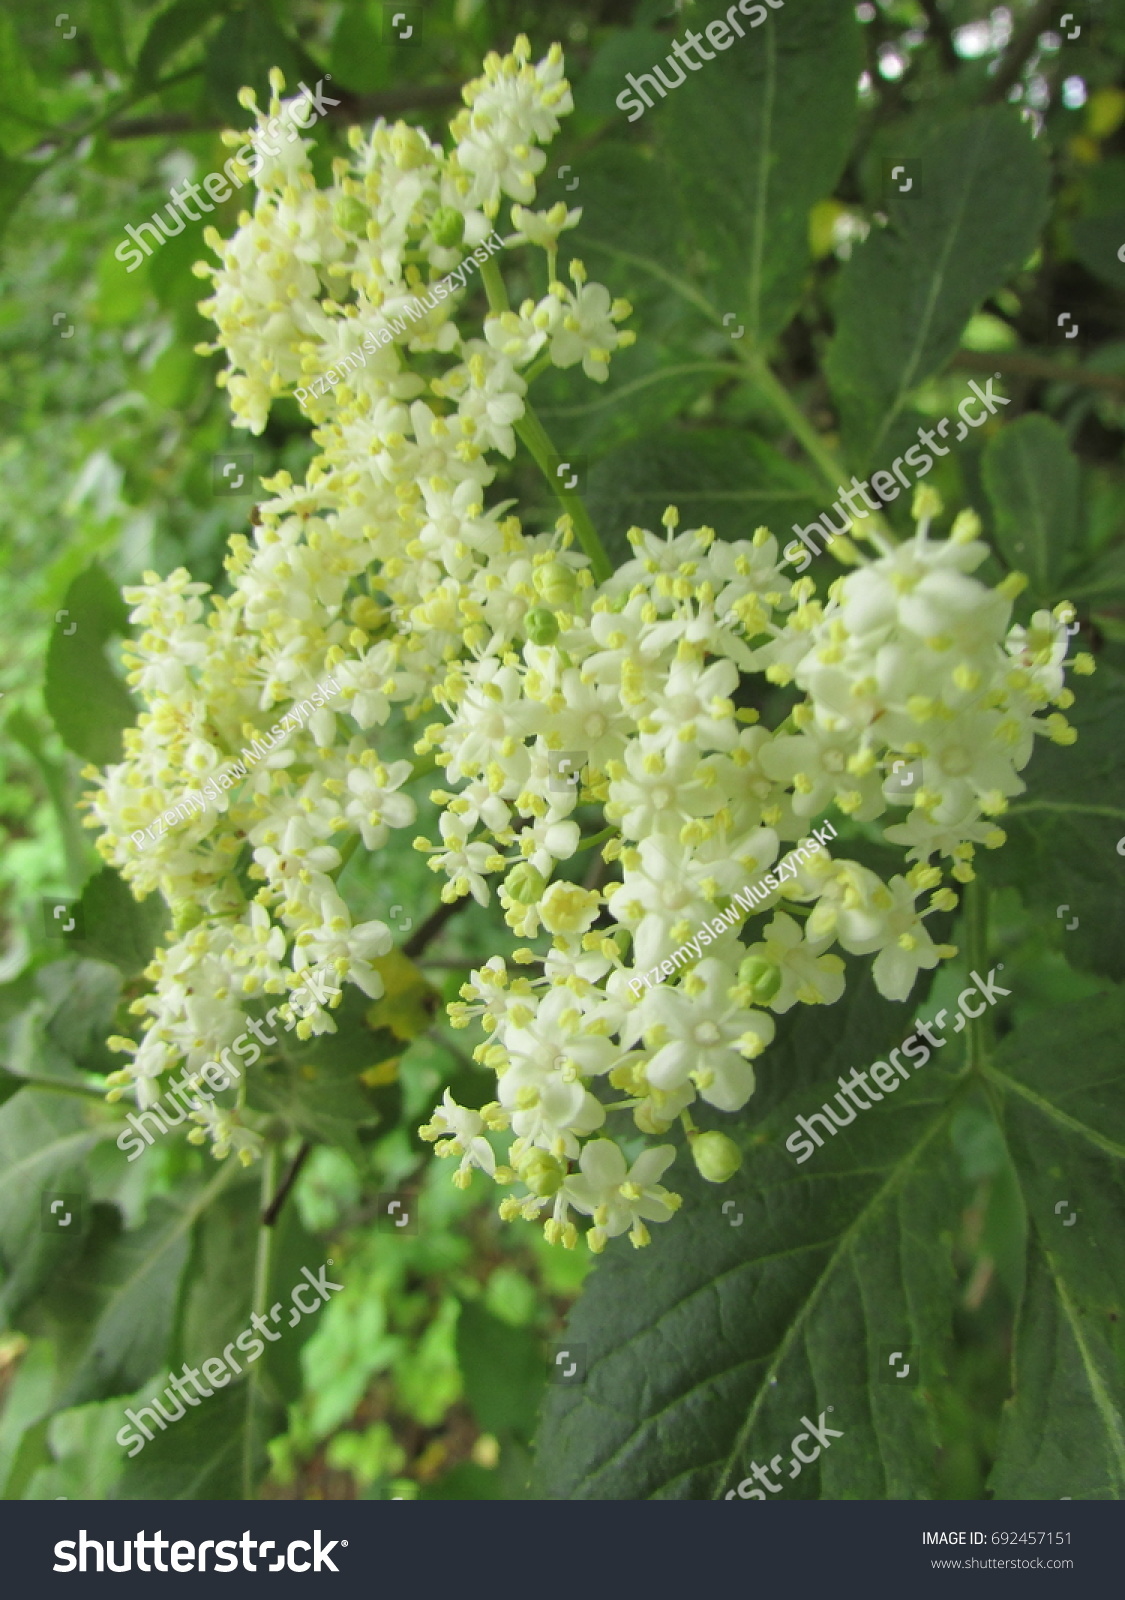 flowers of elder, Sambucus nigra, #692457151